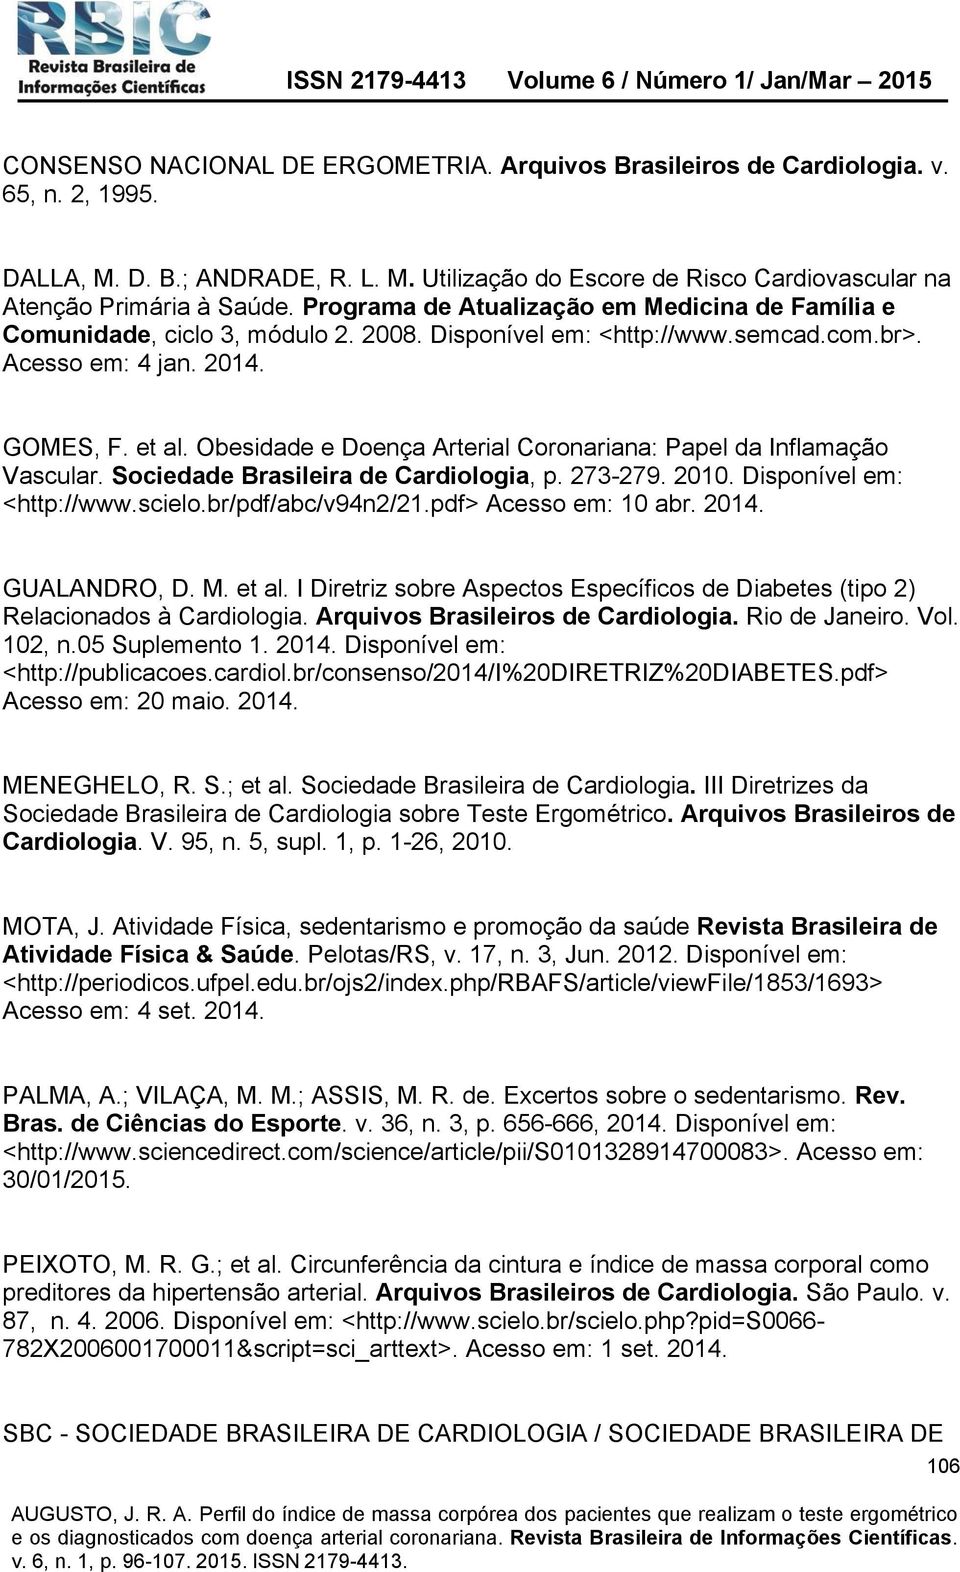 Obesidade e Doença Arterial Coronariana: Papel da Inflamação Vascular. Sociedade Brasileira de Cardiologia, p. 273-279. 2010. Disponível em: <http://www.scielo.br/pdf/abc/v94n2/21.